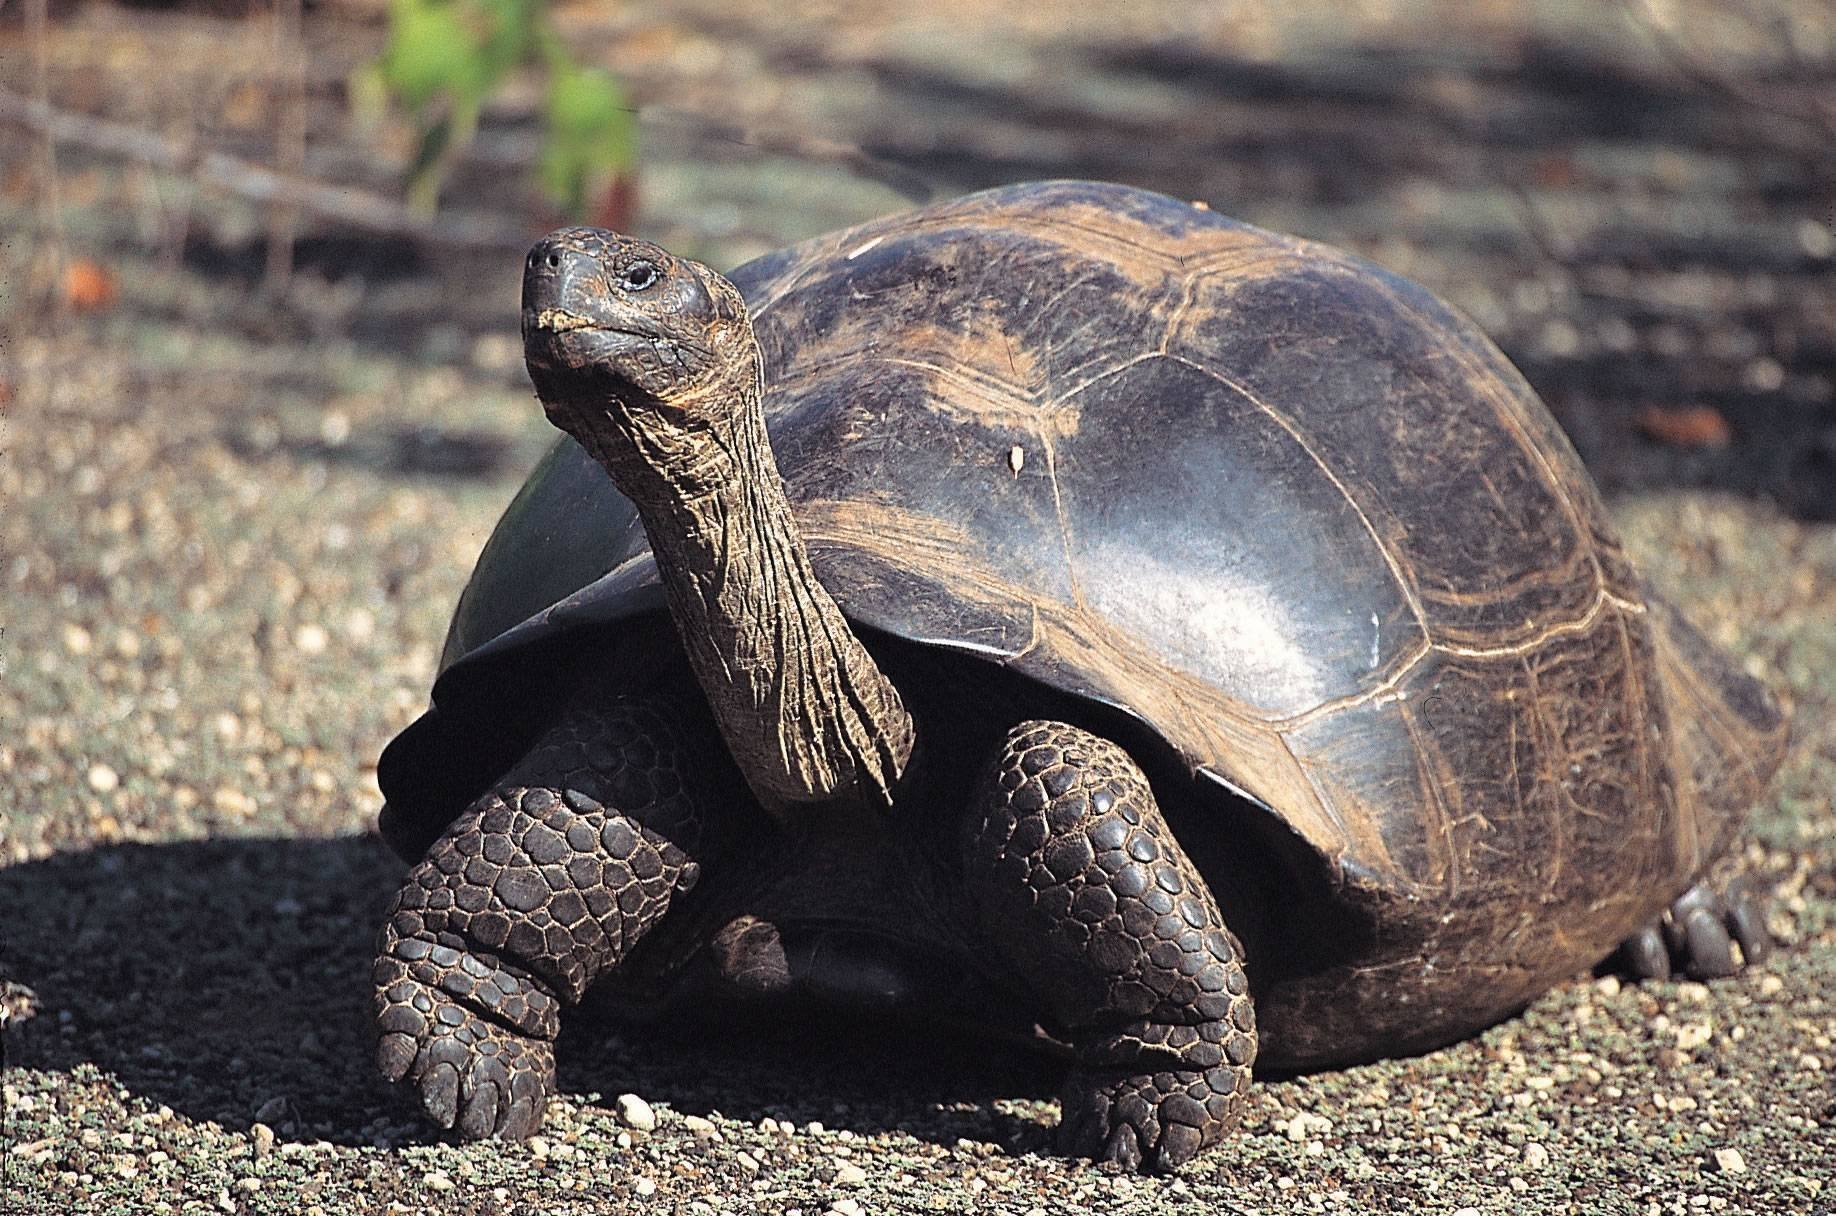 Большая галапагосская черепаха. Галапагосские черепахи Дарвин. Галапагосская черепаха. Галапагос — Эквадор черепахи. Джонатан Галапагосская черепаха.